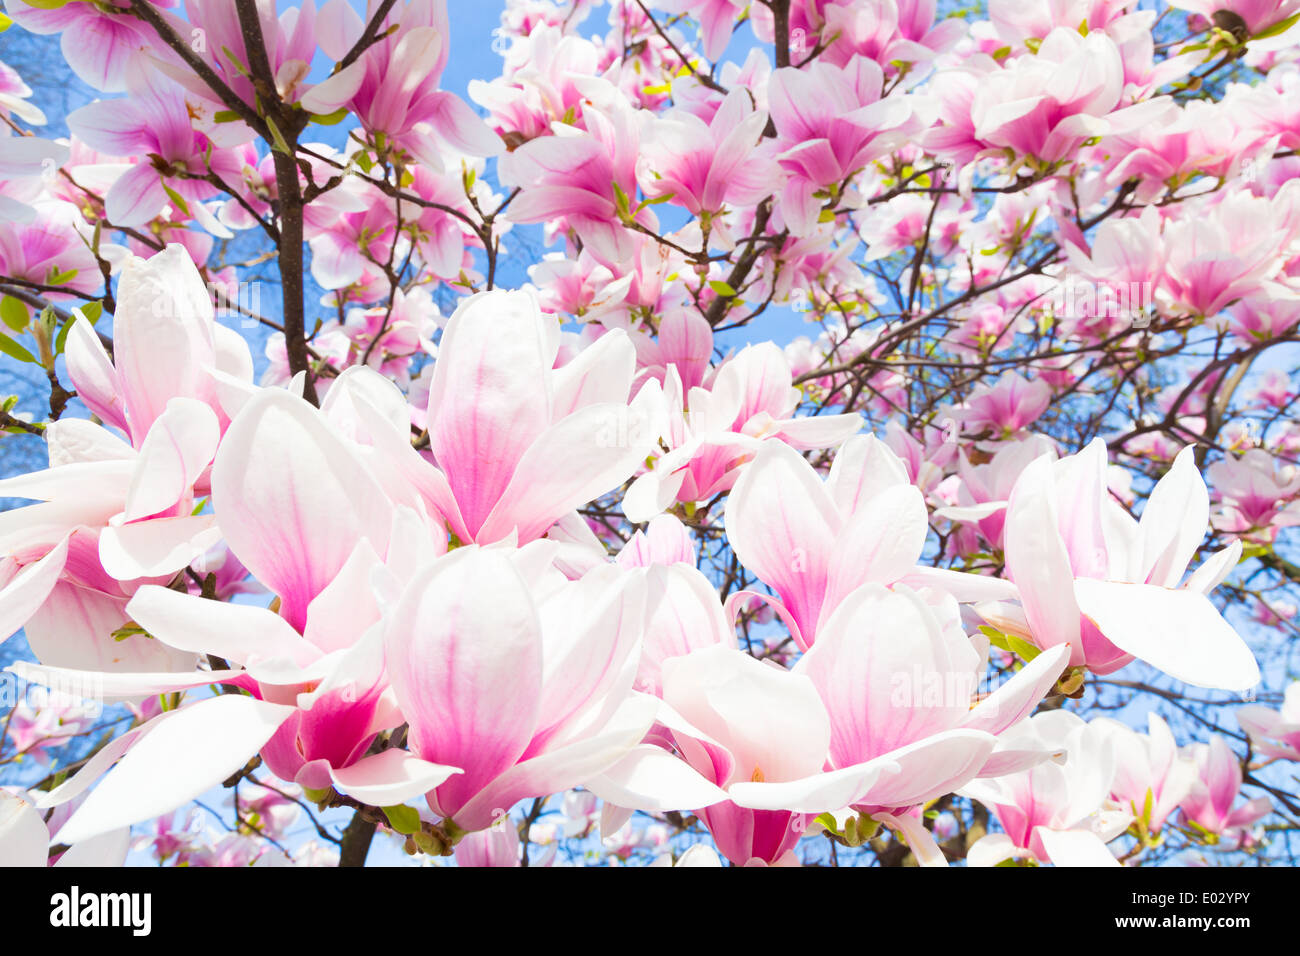 Magnolia tree blossom. Stock Photo